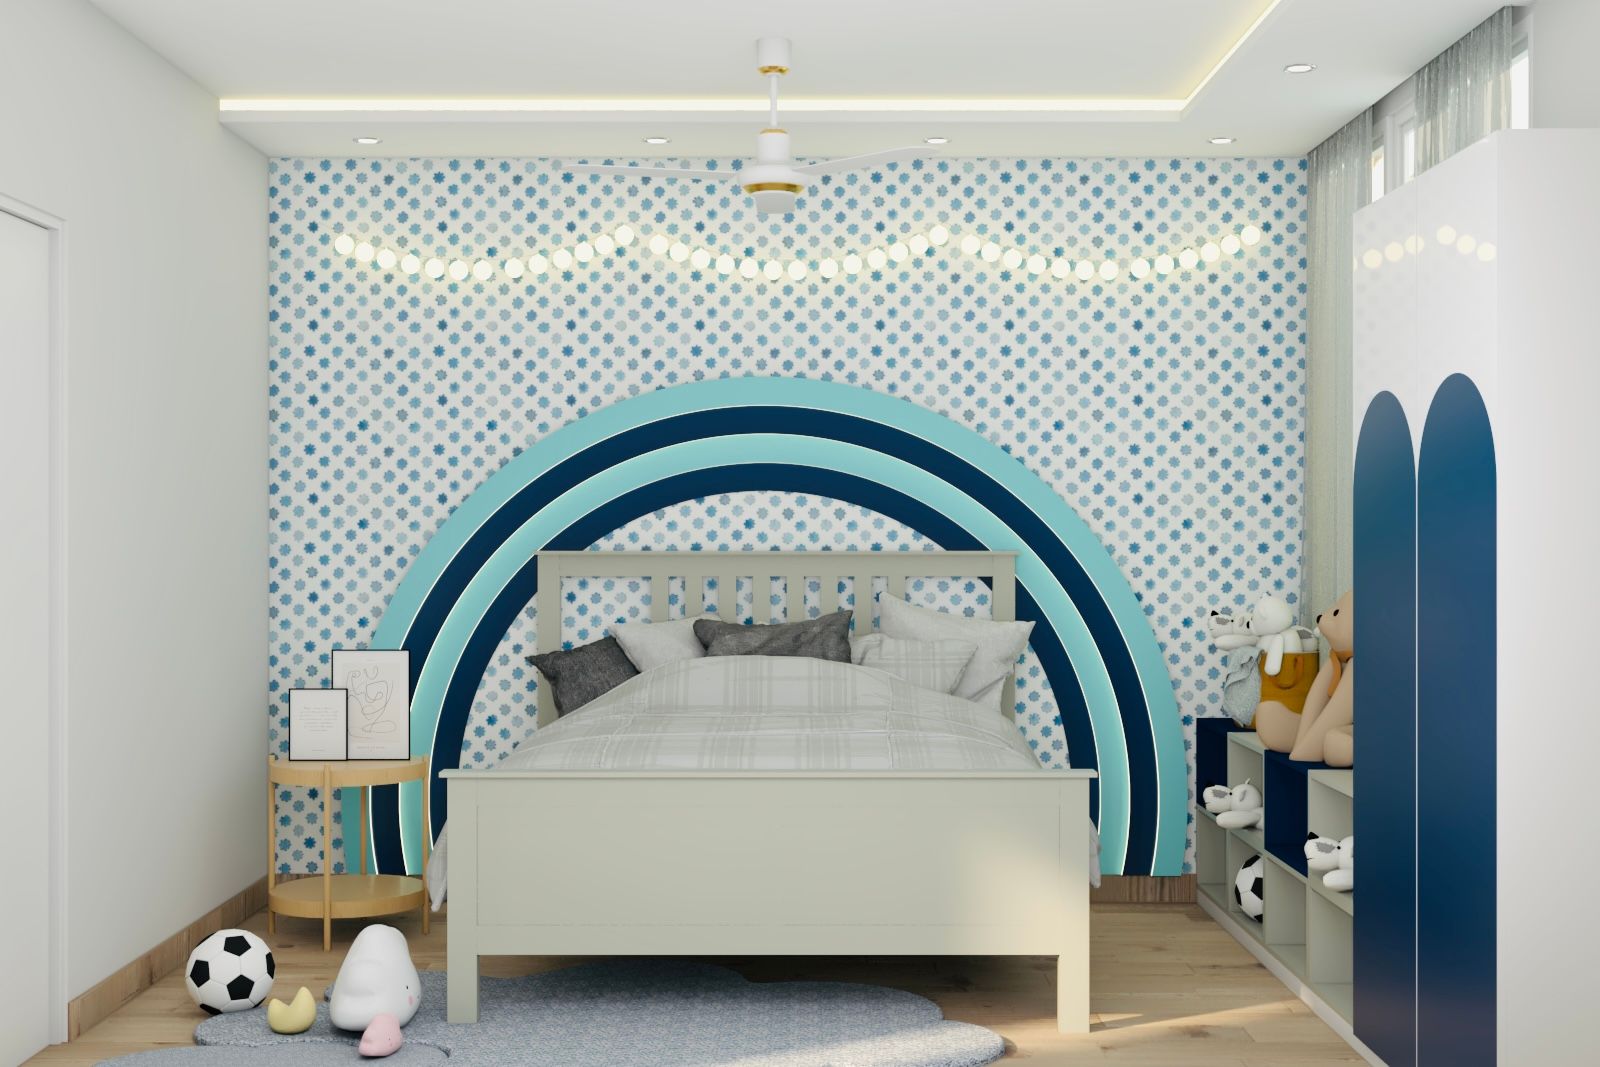 Contemporary Gypsum False Ceiling Design For Kids Rooms